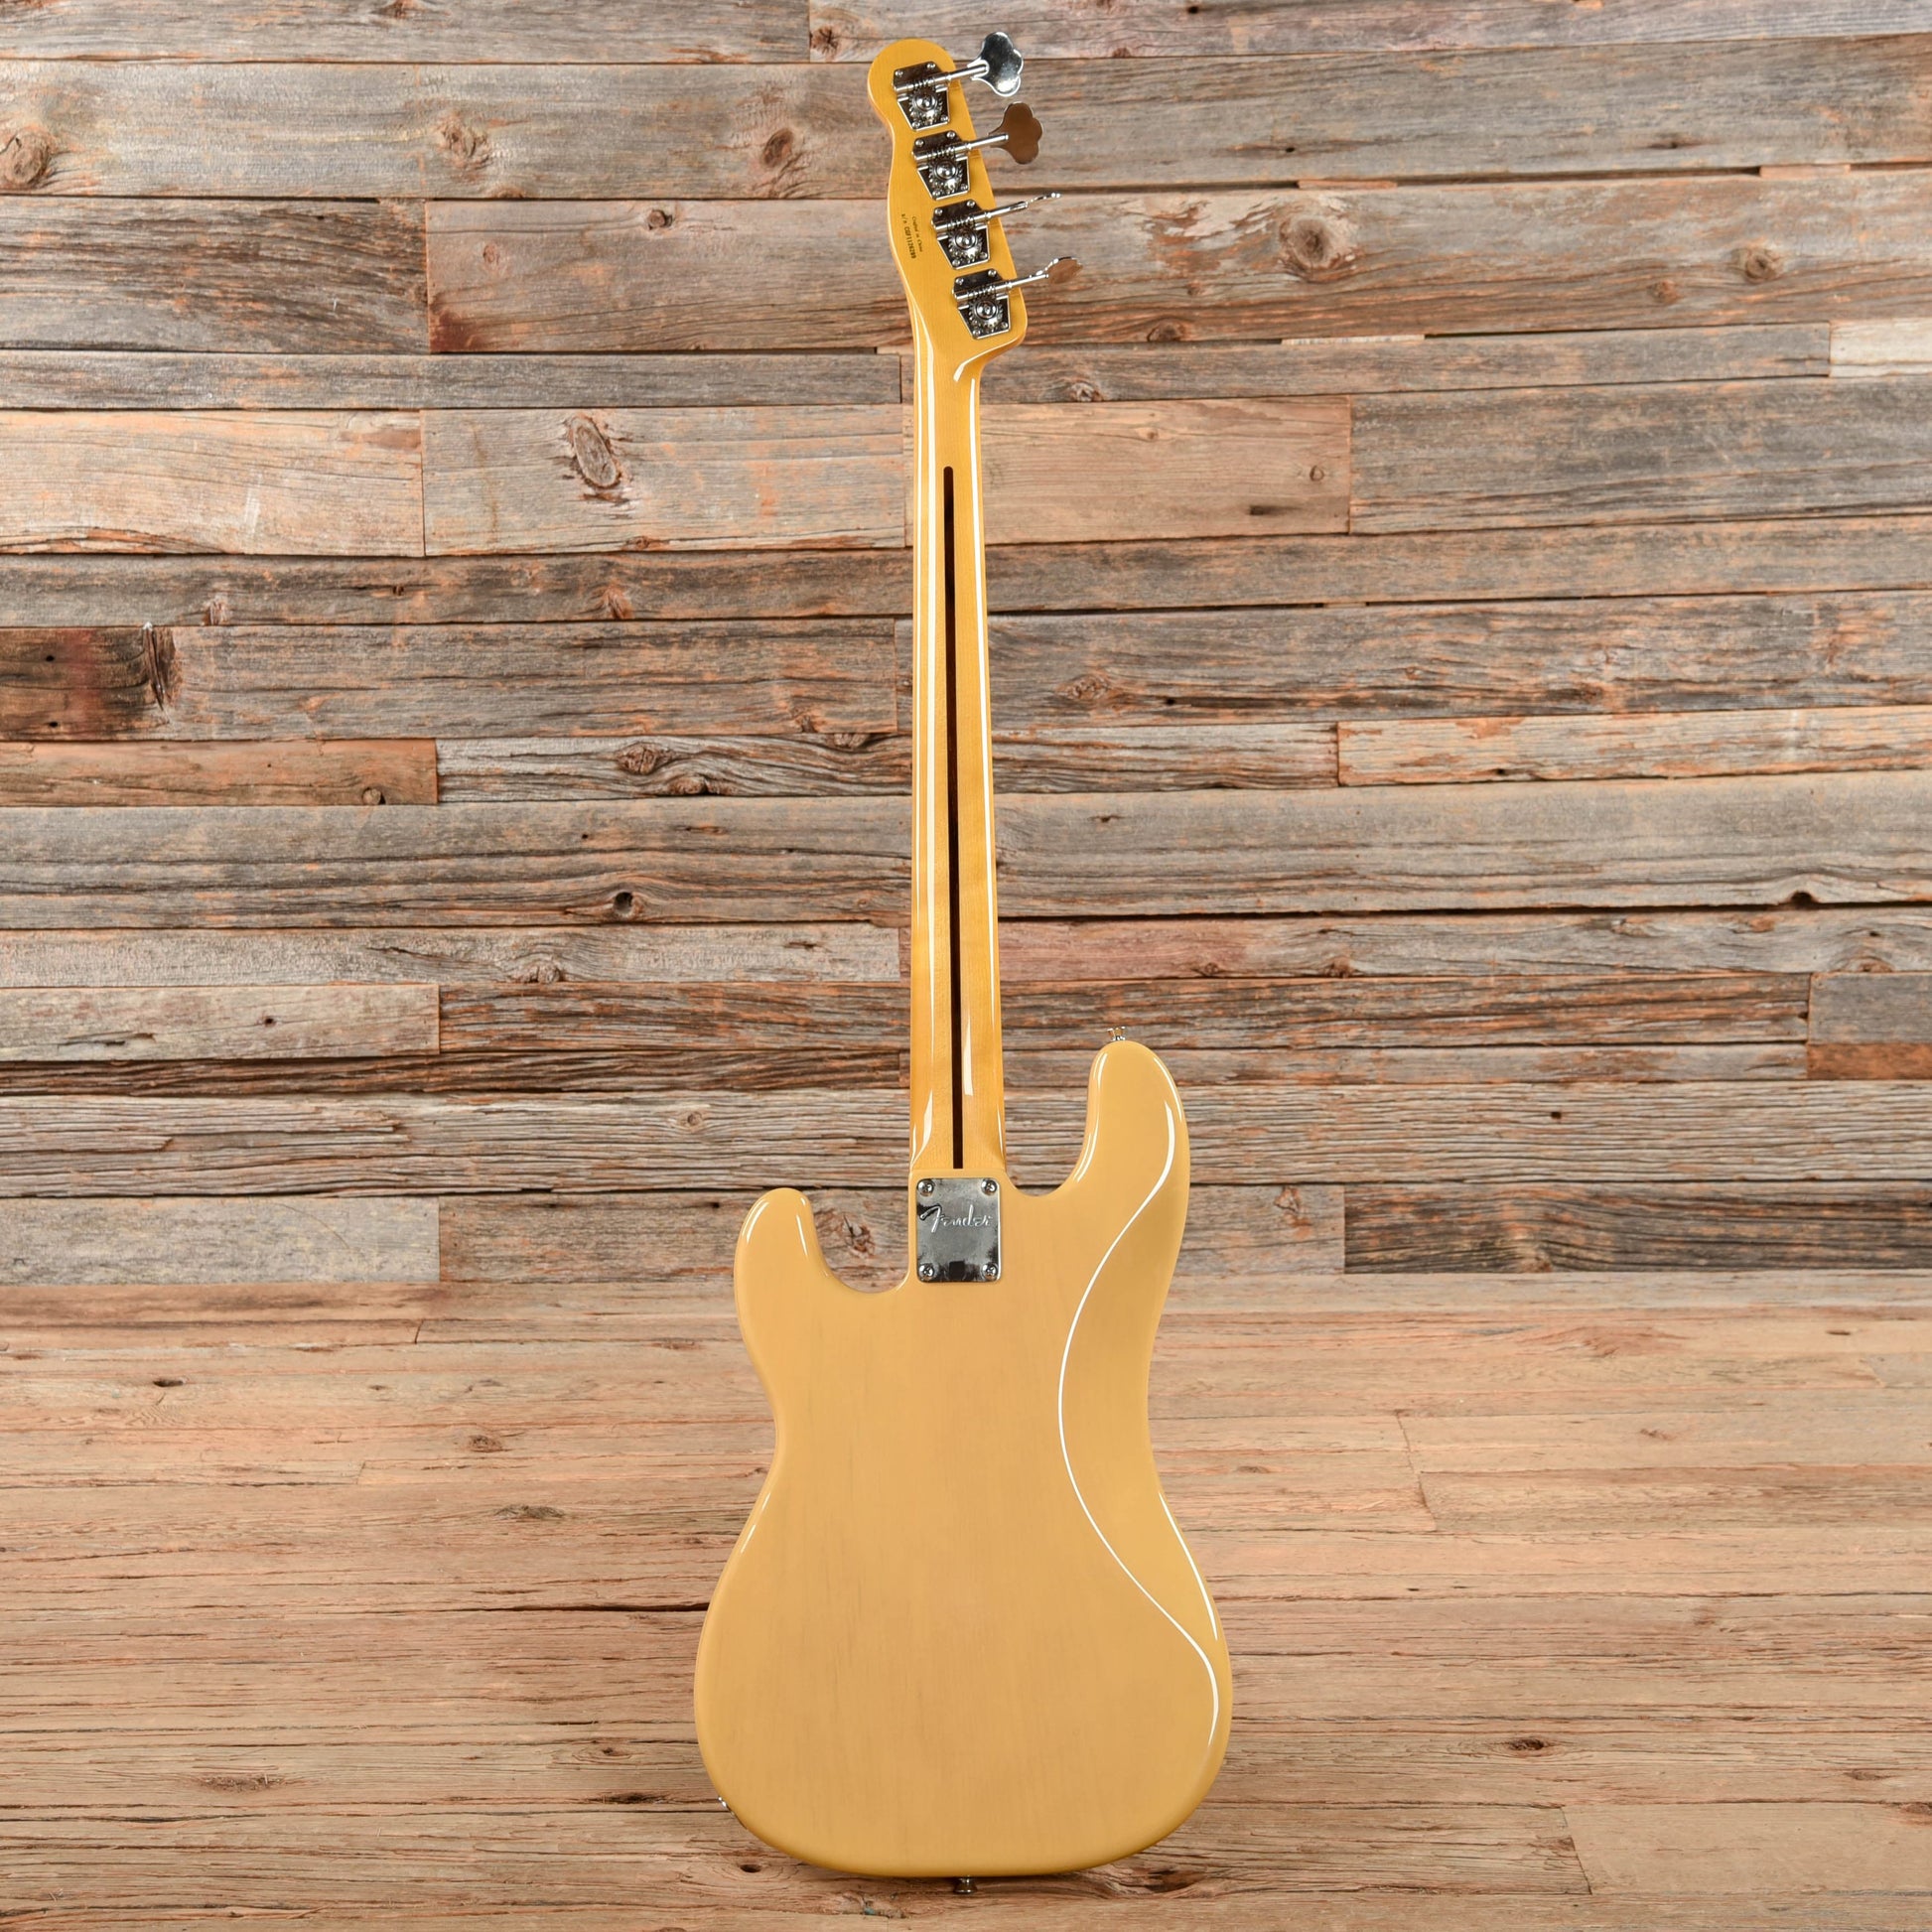 Fender Modern Player Telecaster Bass Butterscotch Blonde 2011 Bass Guitars / 4-String